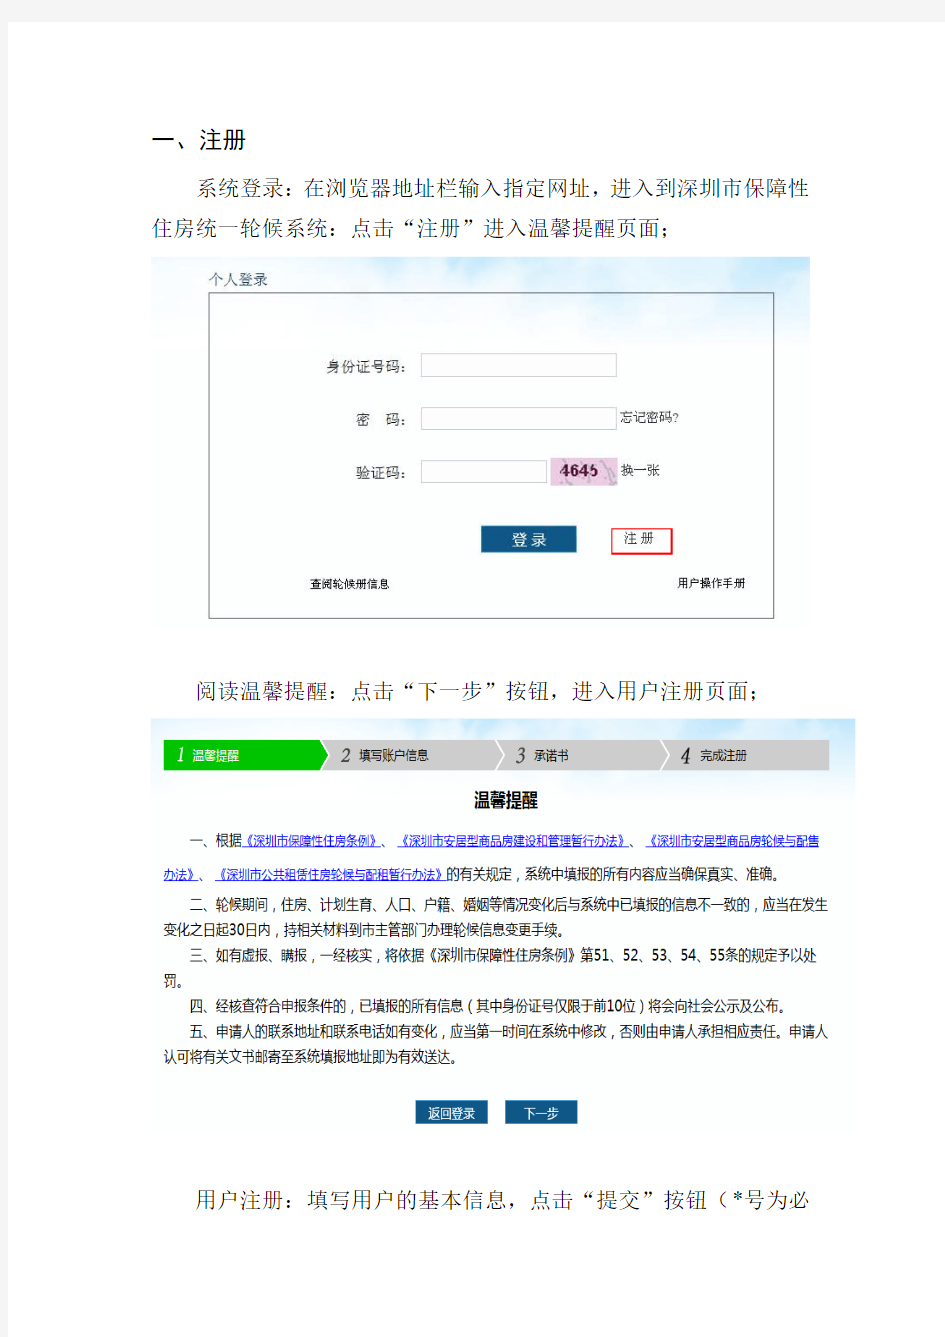 深圳市保障性住房统一轮候系统操作手册